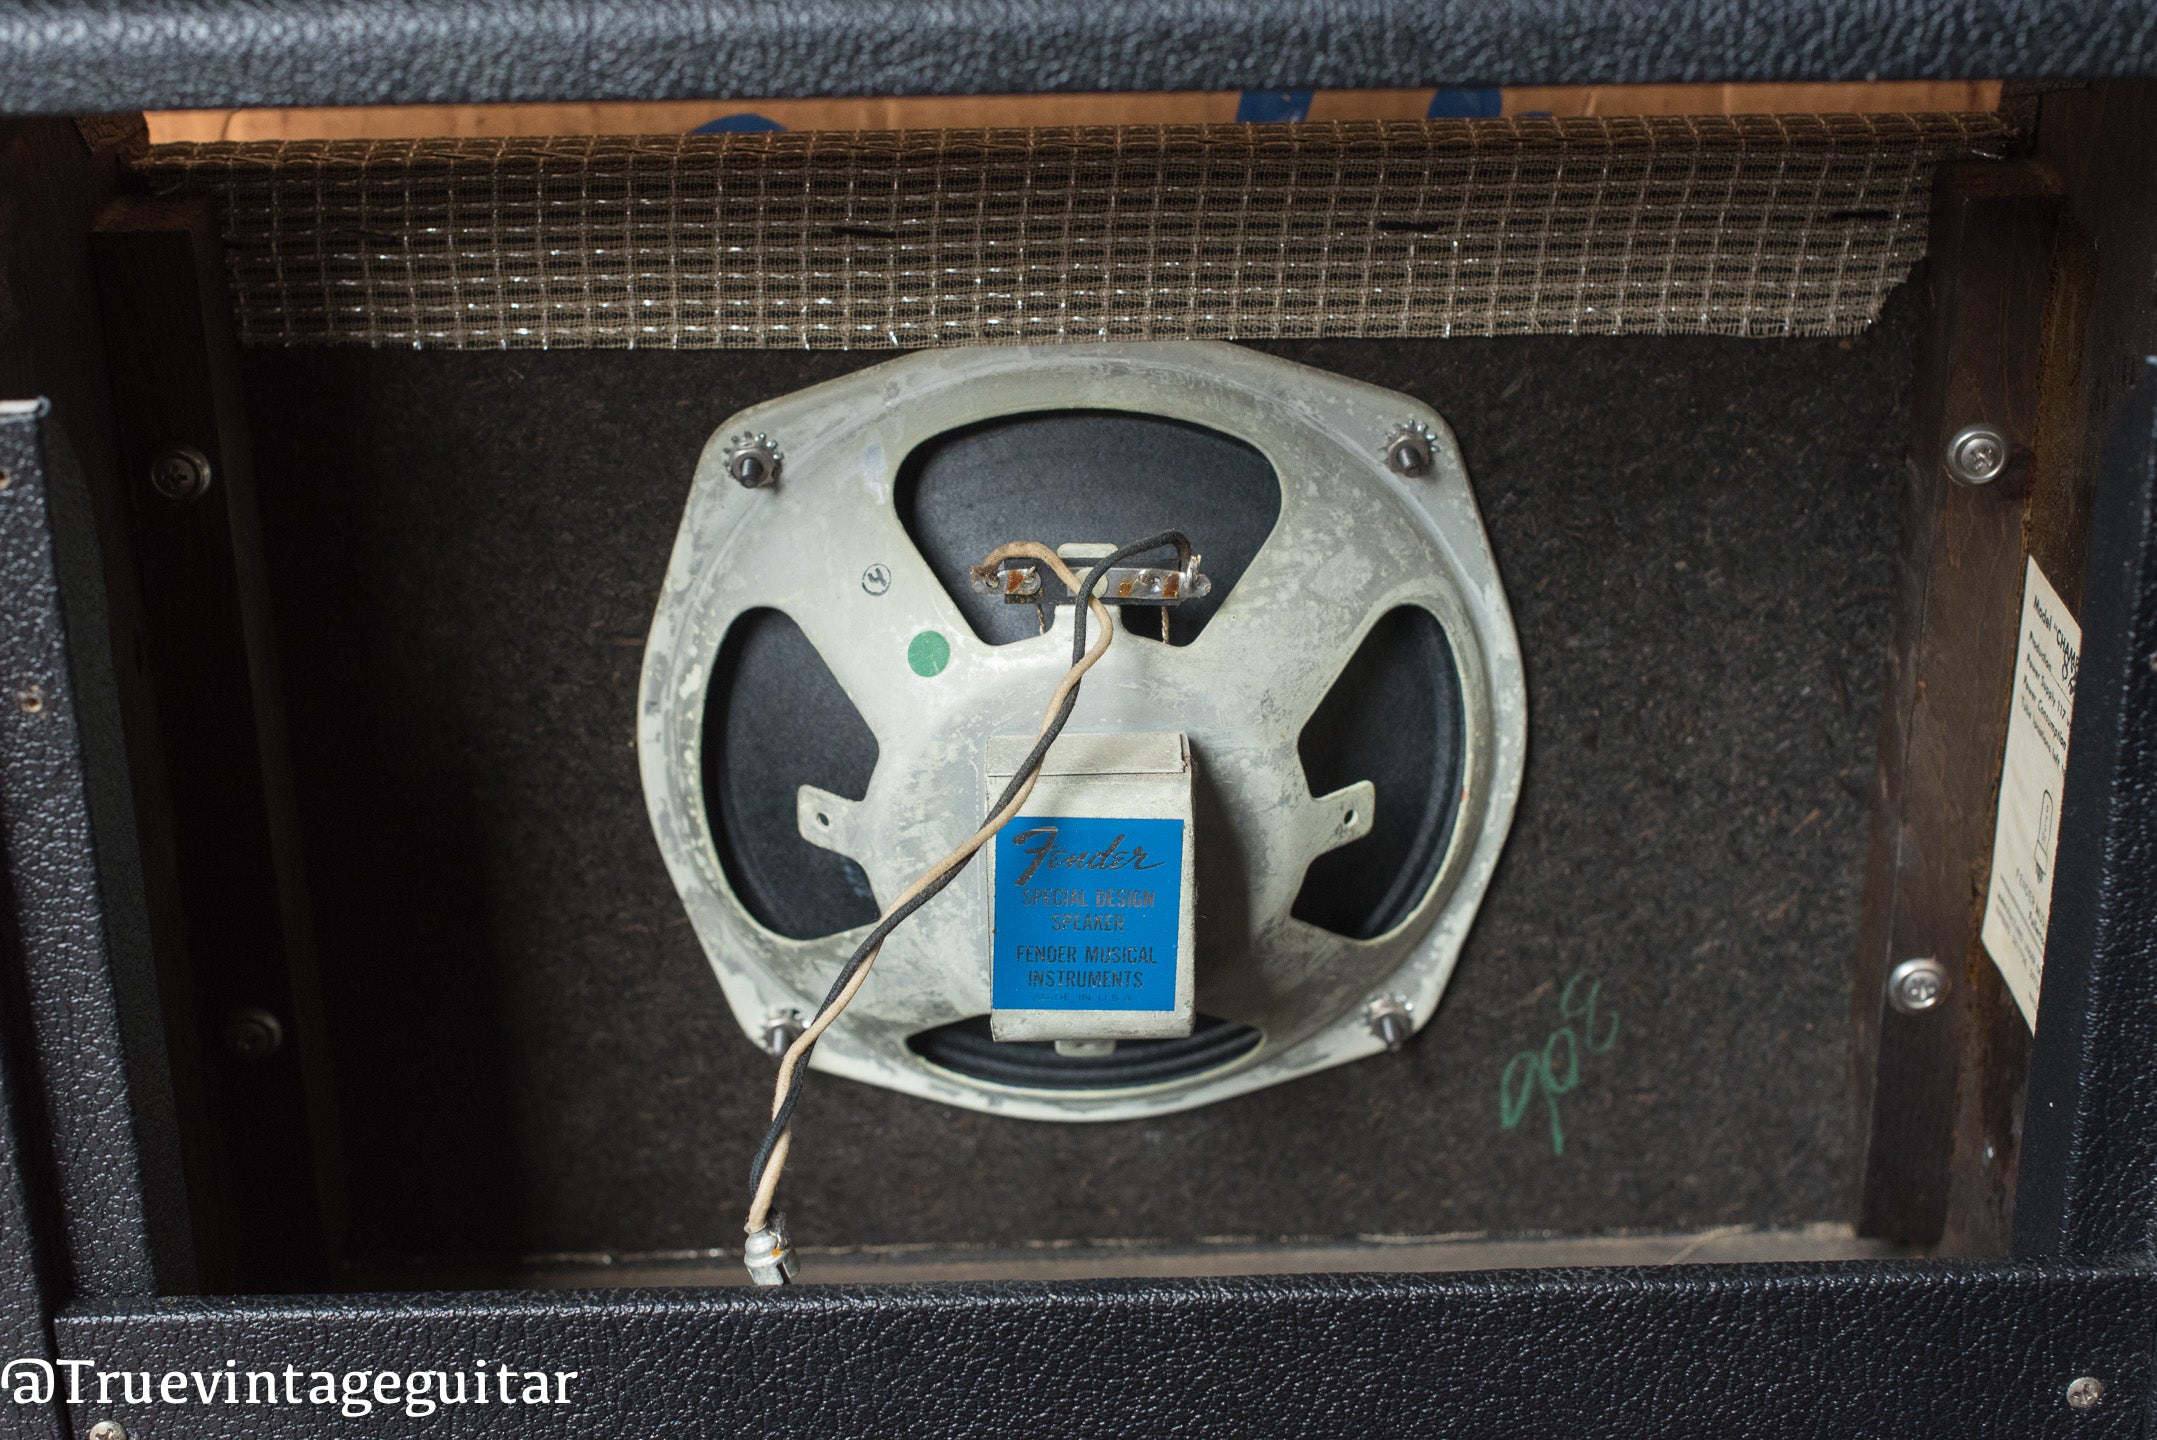 Original 8" speaker, vintage 1966 Fender Champ